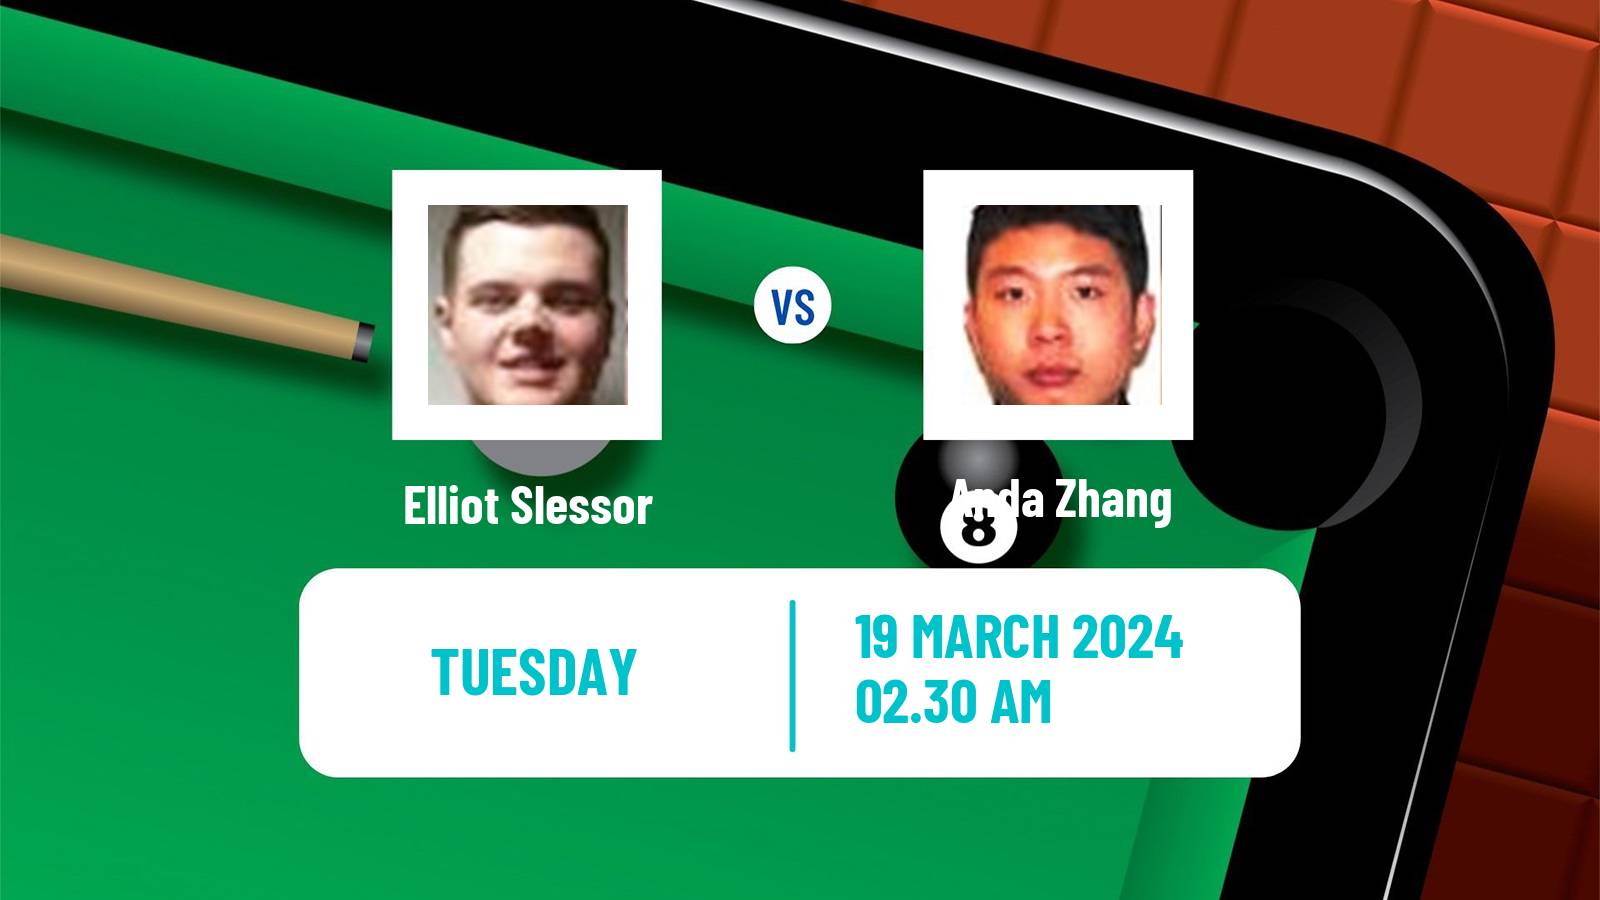 Snooker World Open Elliot Slessor - Anda Zhang